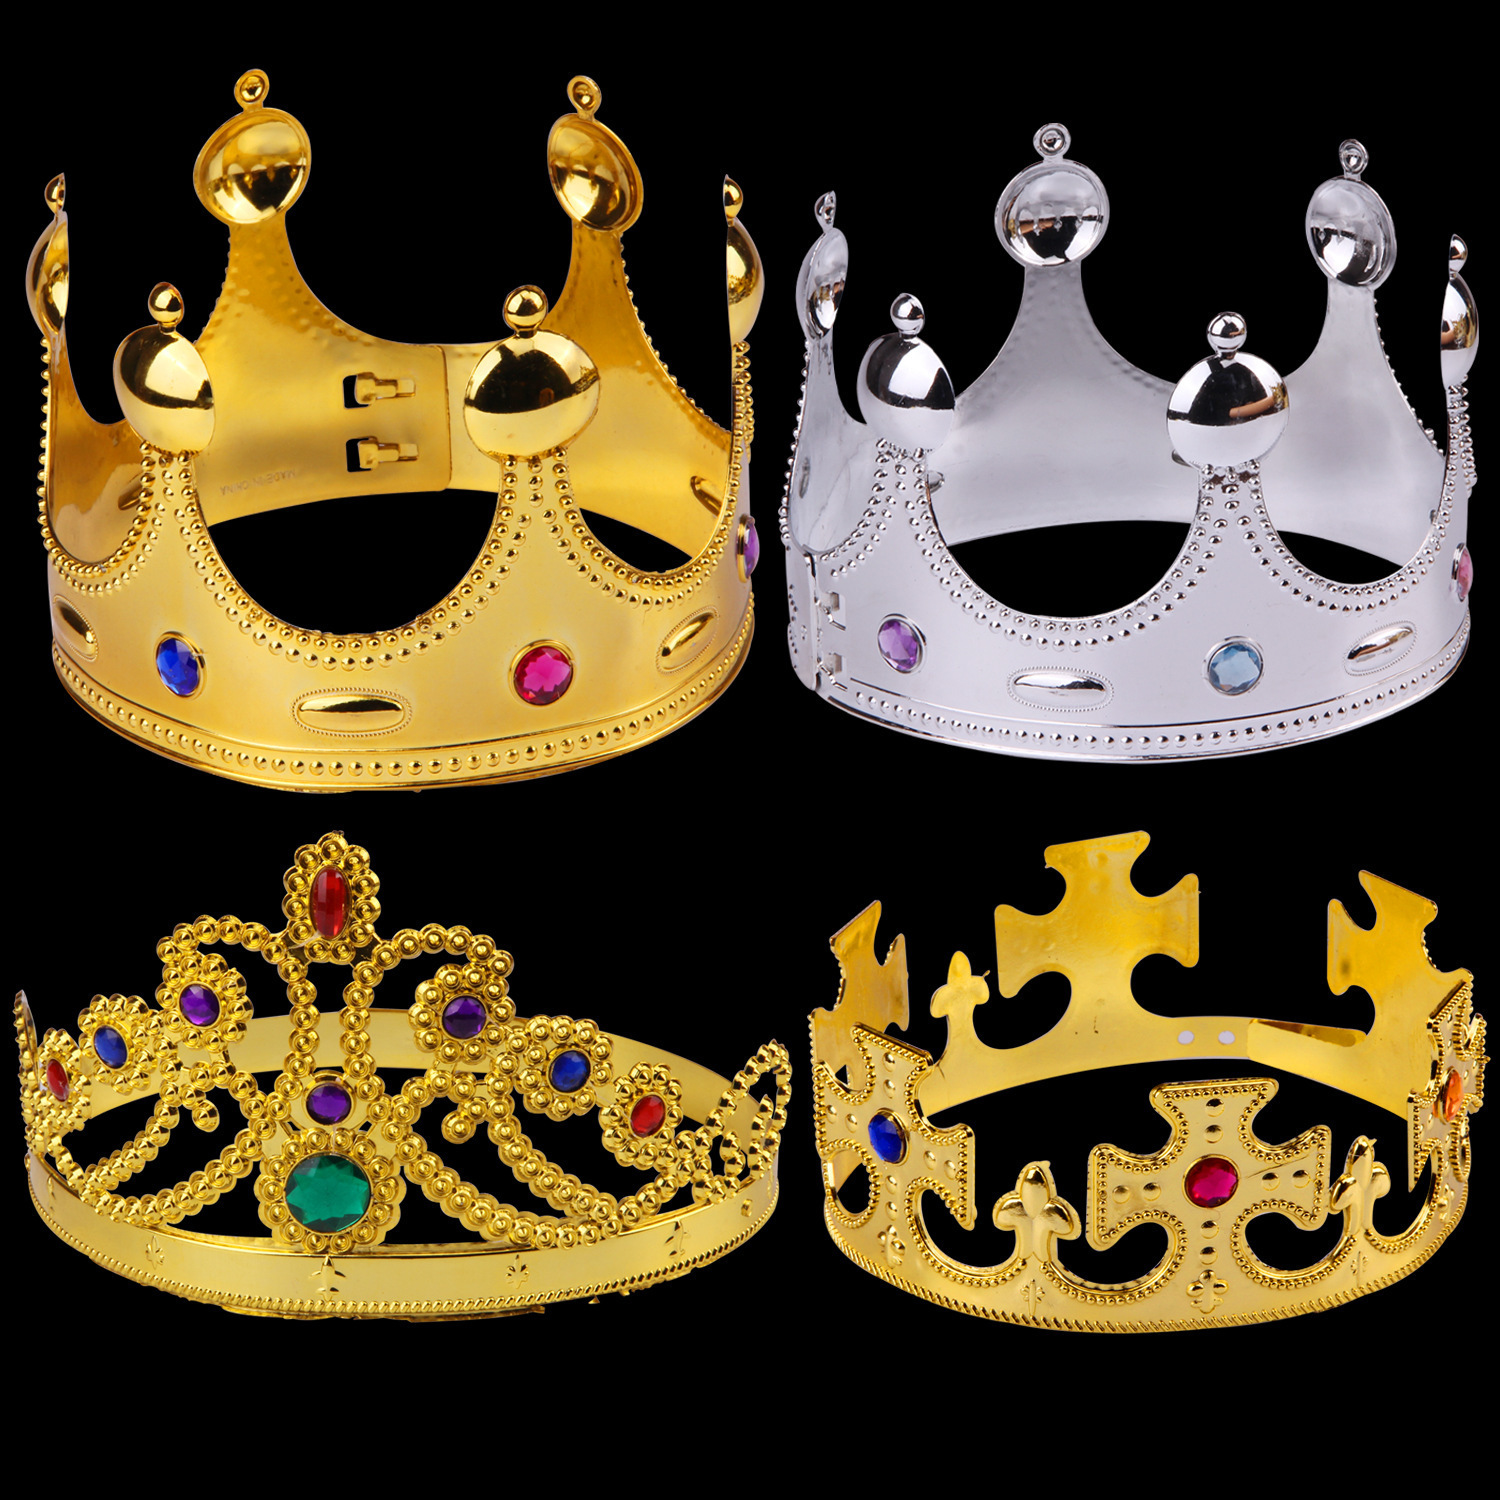 国王皇冠帽子万圣节化妆舞会装扮塑料皇冠权杖生日公主皇冠批发